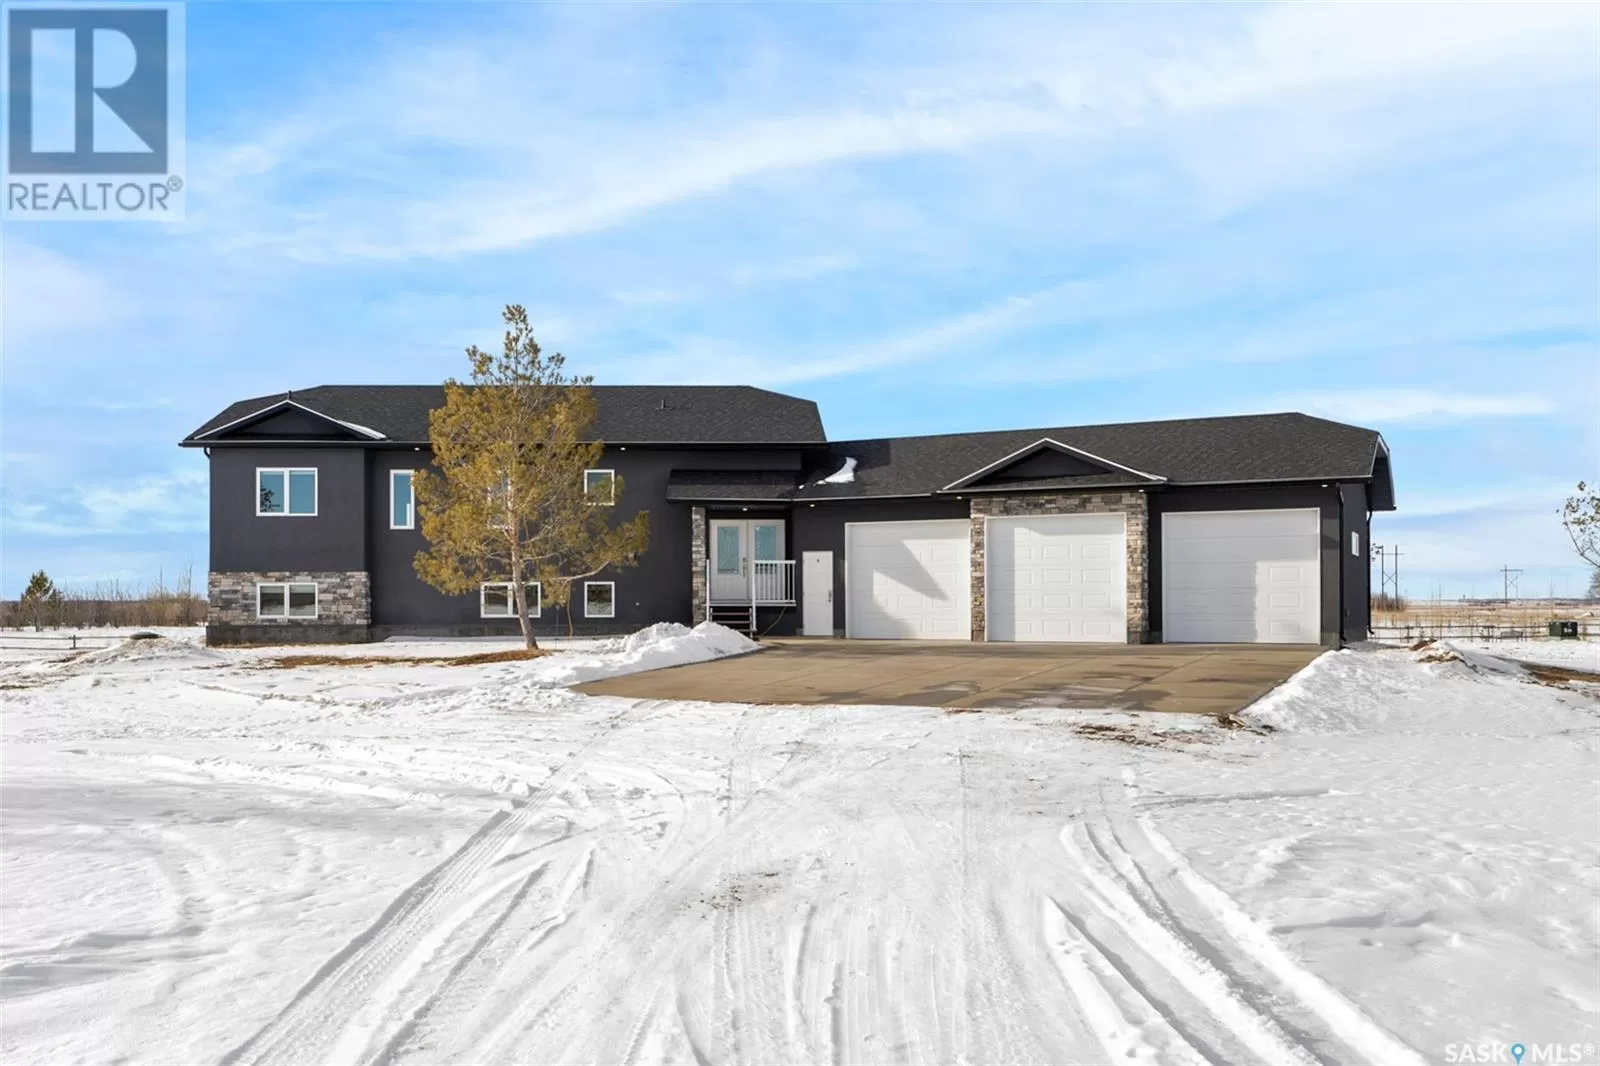 House for rent: Rathgeber Acreage, Corman Park Rm No. 344, Saskatchewan S7K 3J6